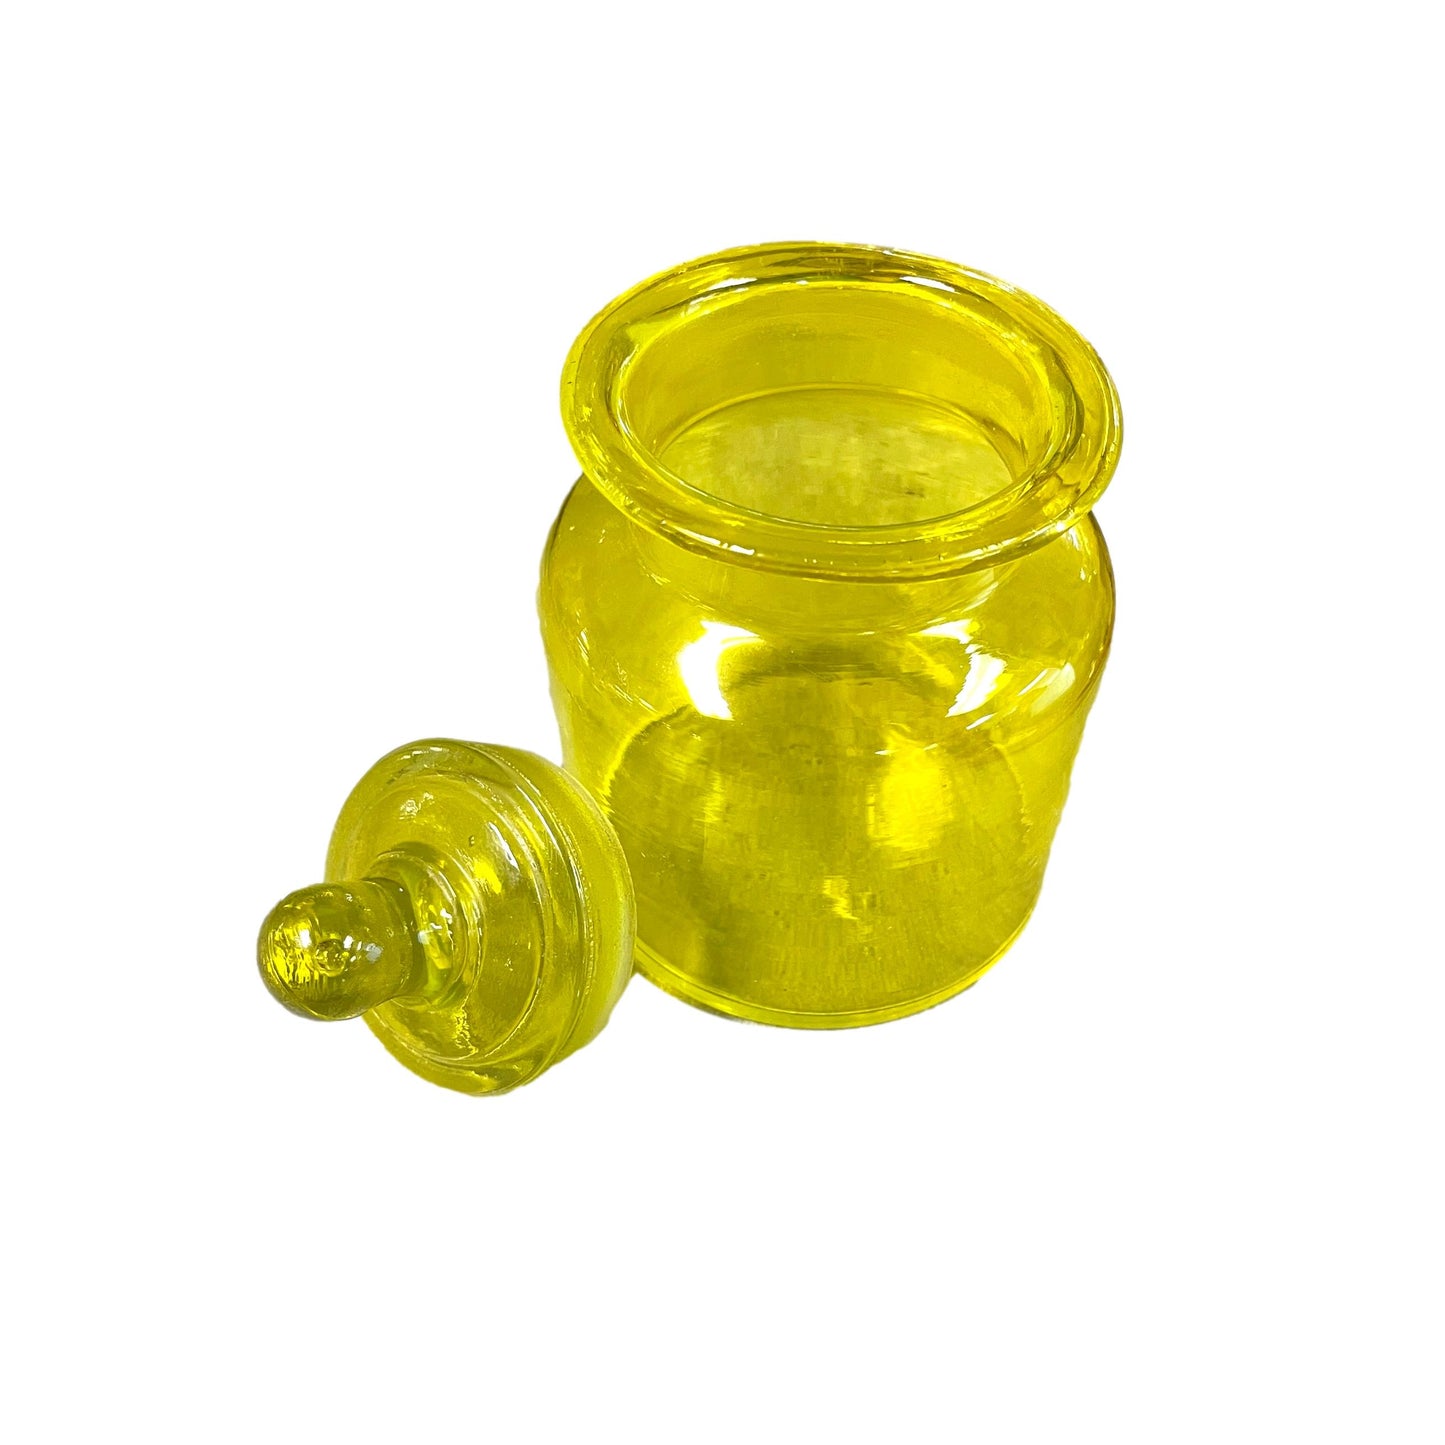 Vaseline Small Jar